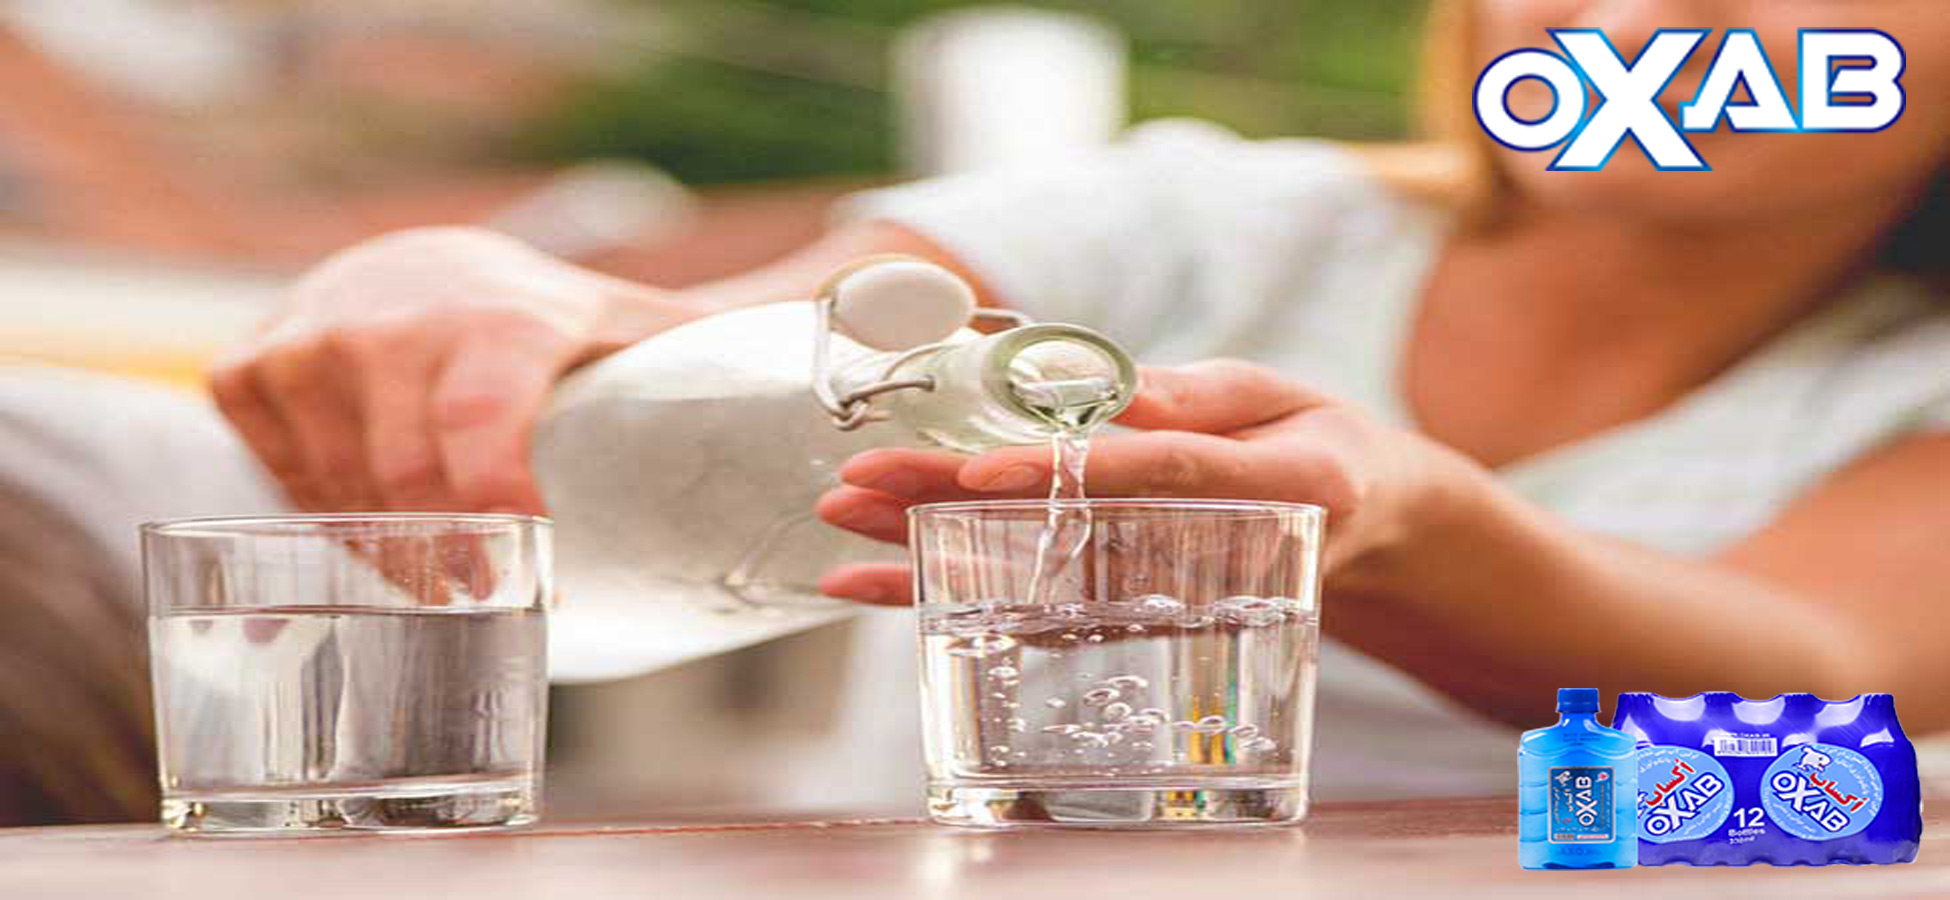 آب آشامیدنی تا چند روز قابل نوشیدن است؟ خرید آب